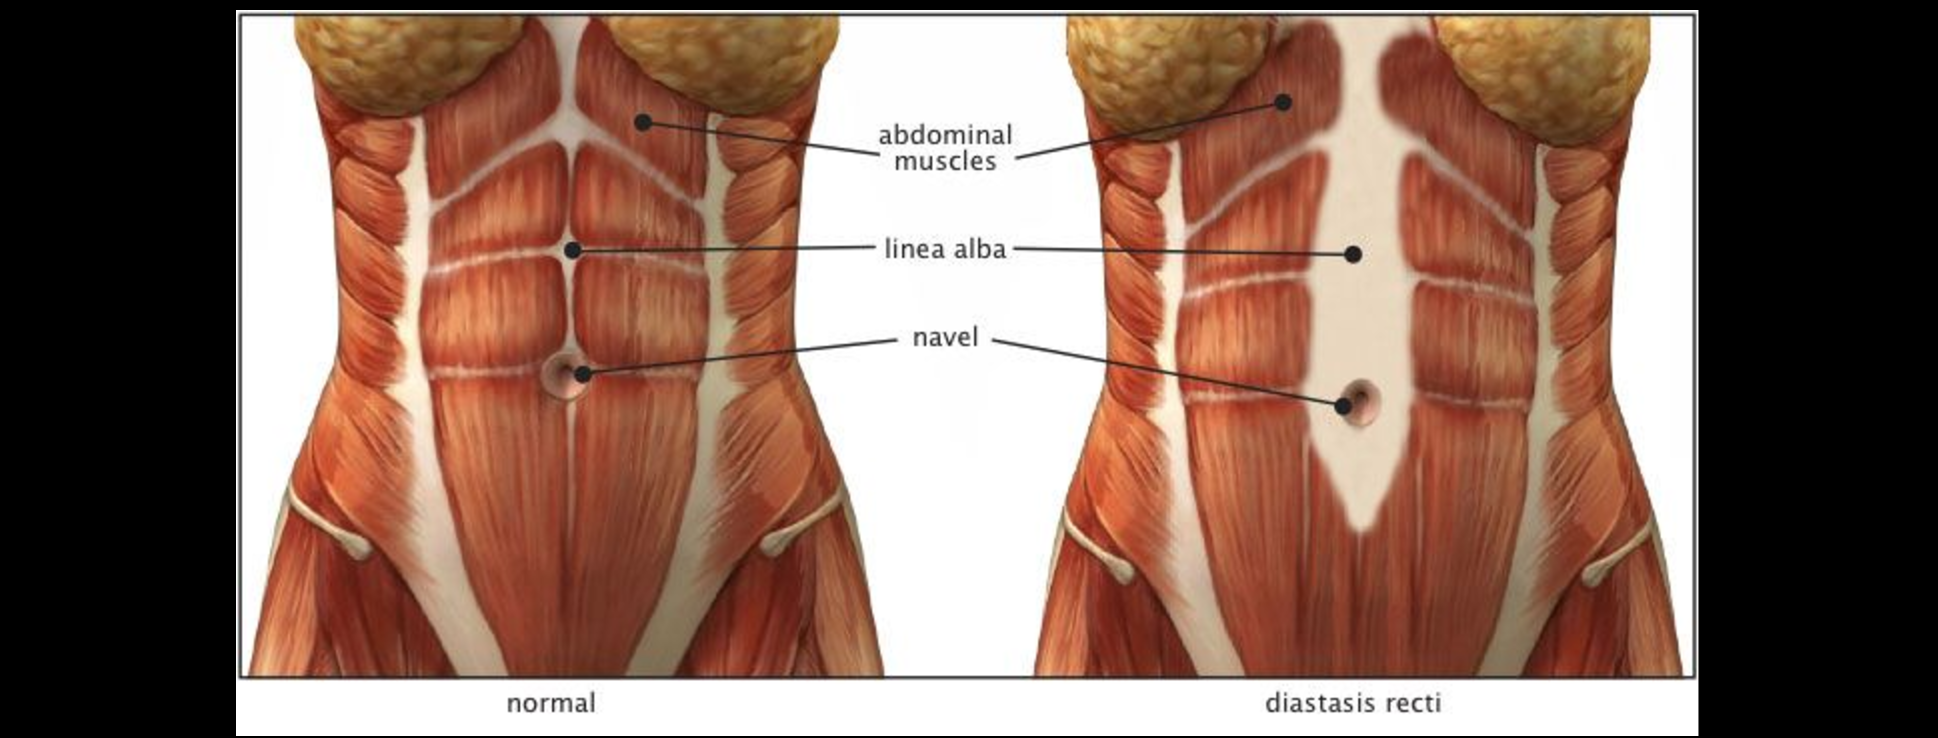 Мышцы живота у женщин анатомия фото